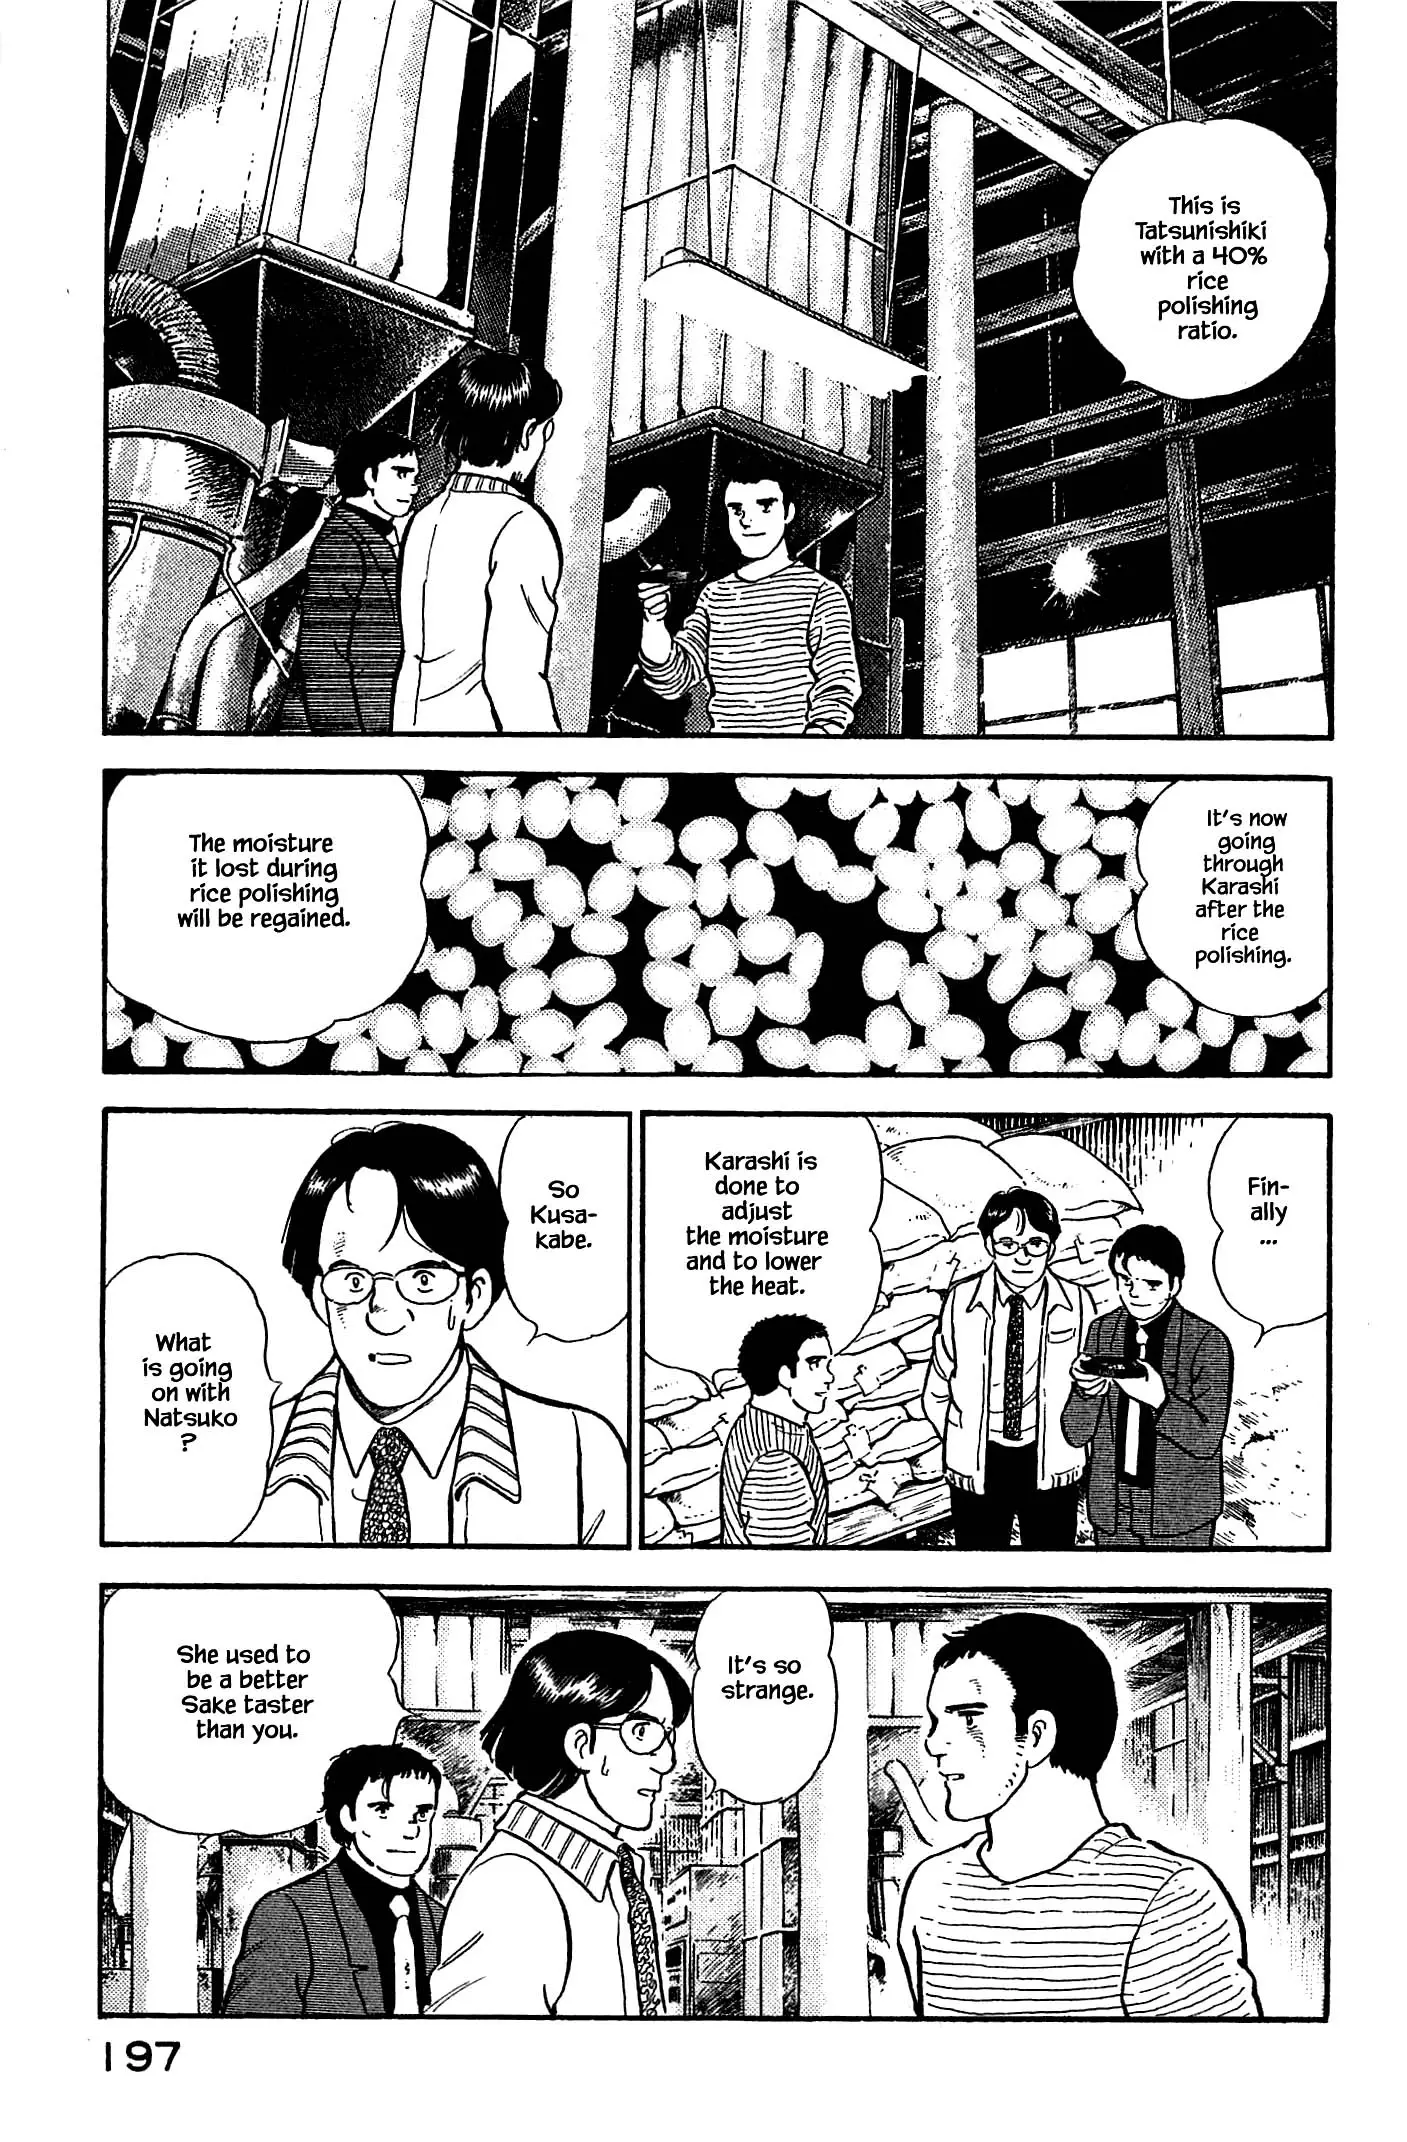 Natsuko's Sake - 108 page 11-85961921